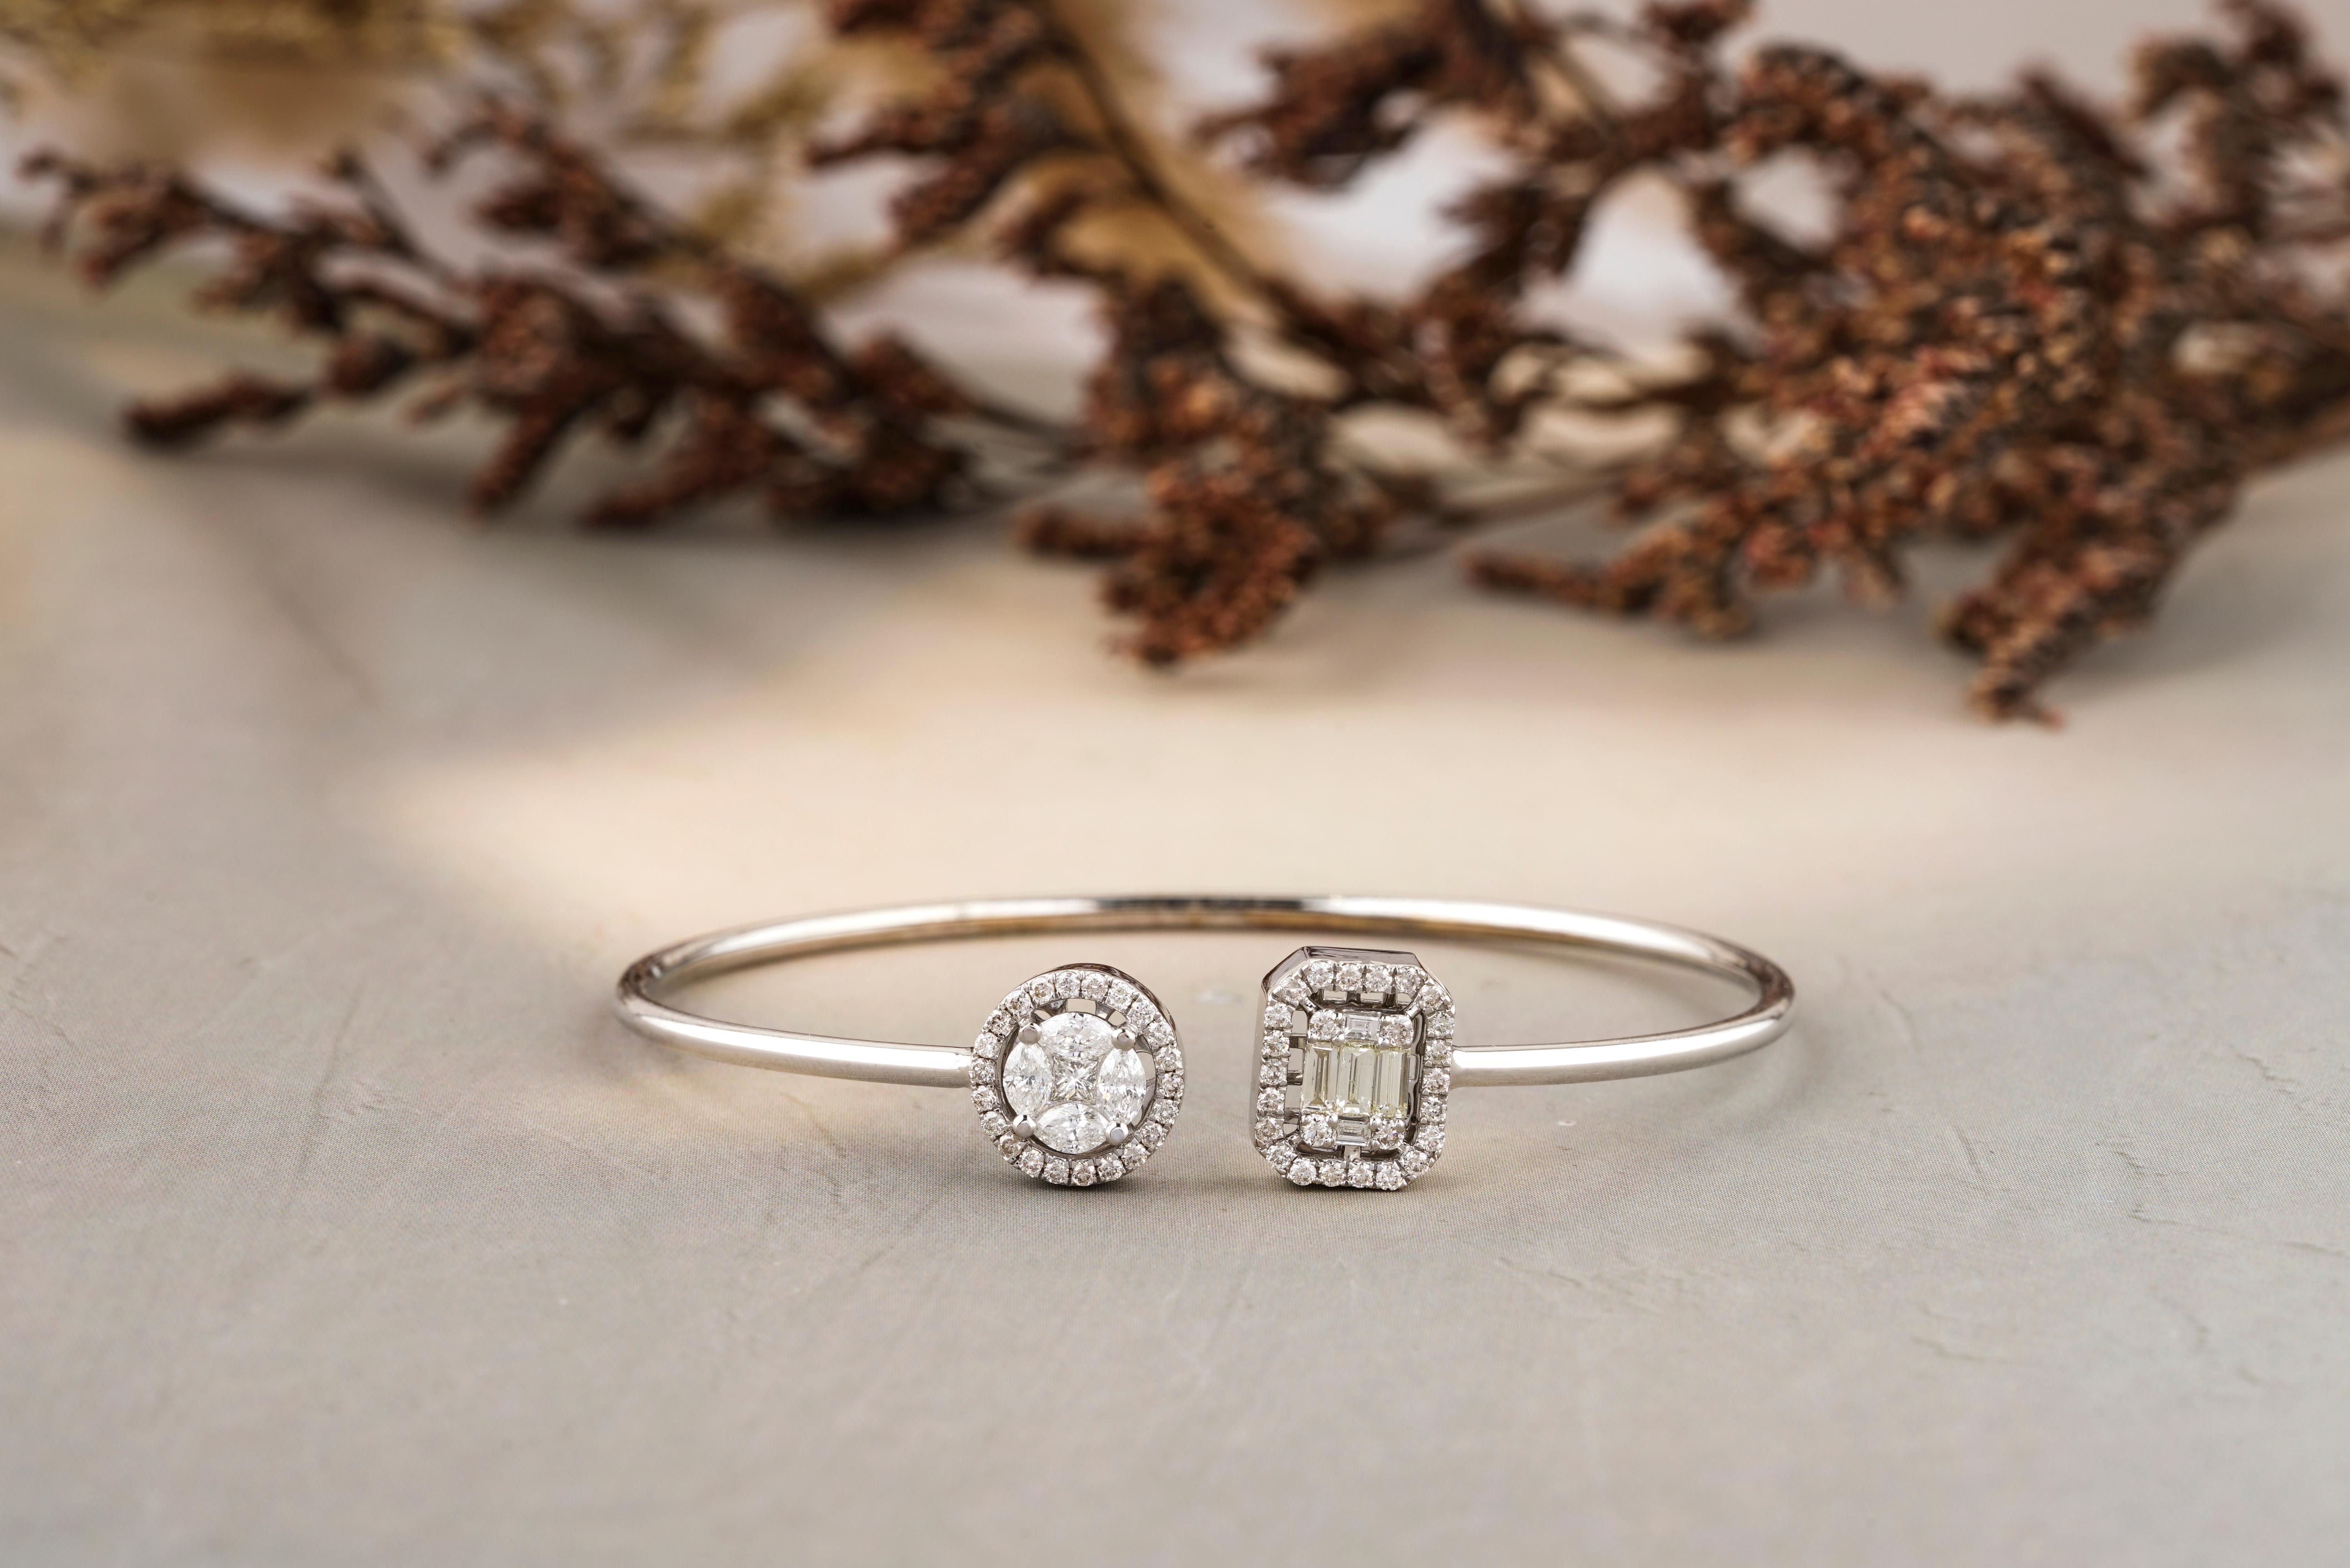 
Gönnen Sie sich den ultimativen Ausdruck von Luxus mit unserem Fancy Diamonds Halo Cuff Bracelet. Dieses Armband aus strahlendem 18 Karat Massivgold präsentiert eine faszinierende Reihe von Marquise-, Rund- und Baguette-Diamanten. Die